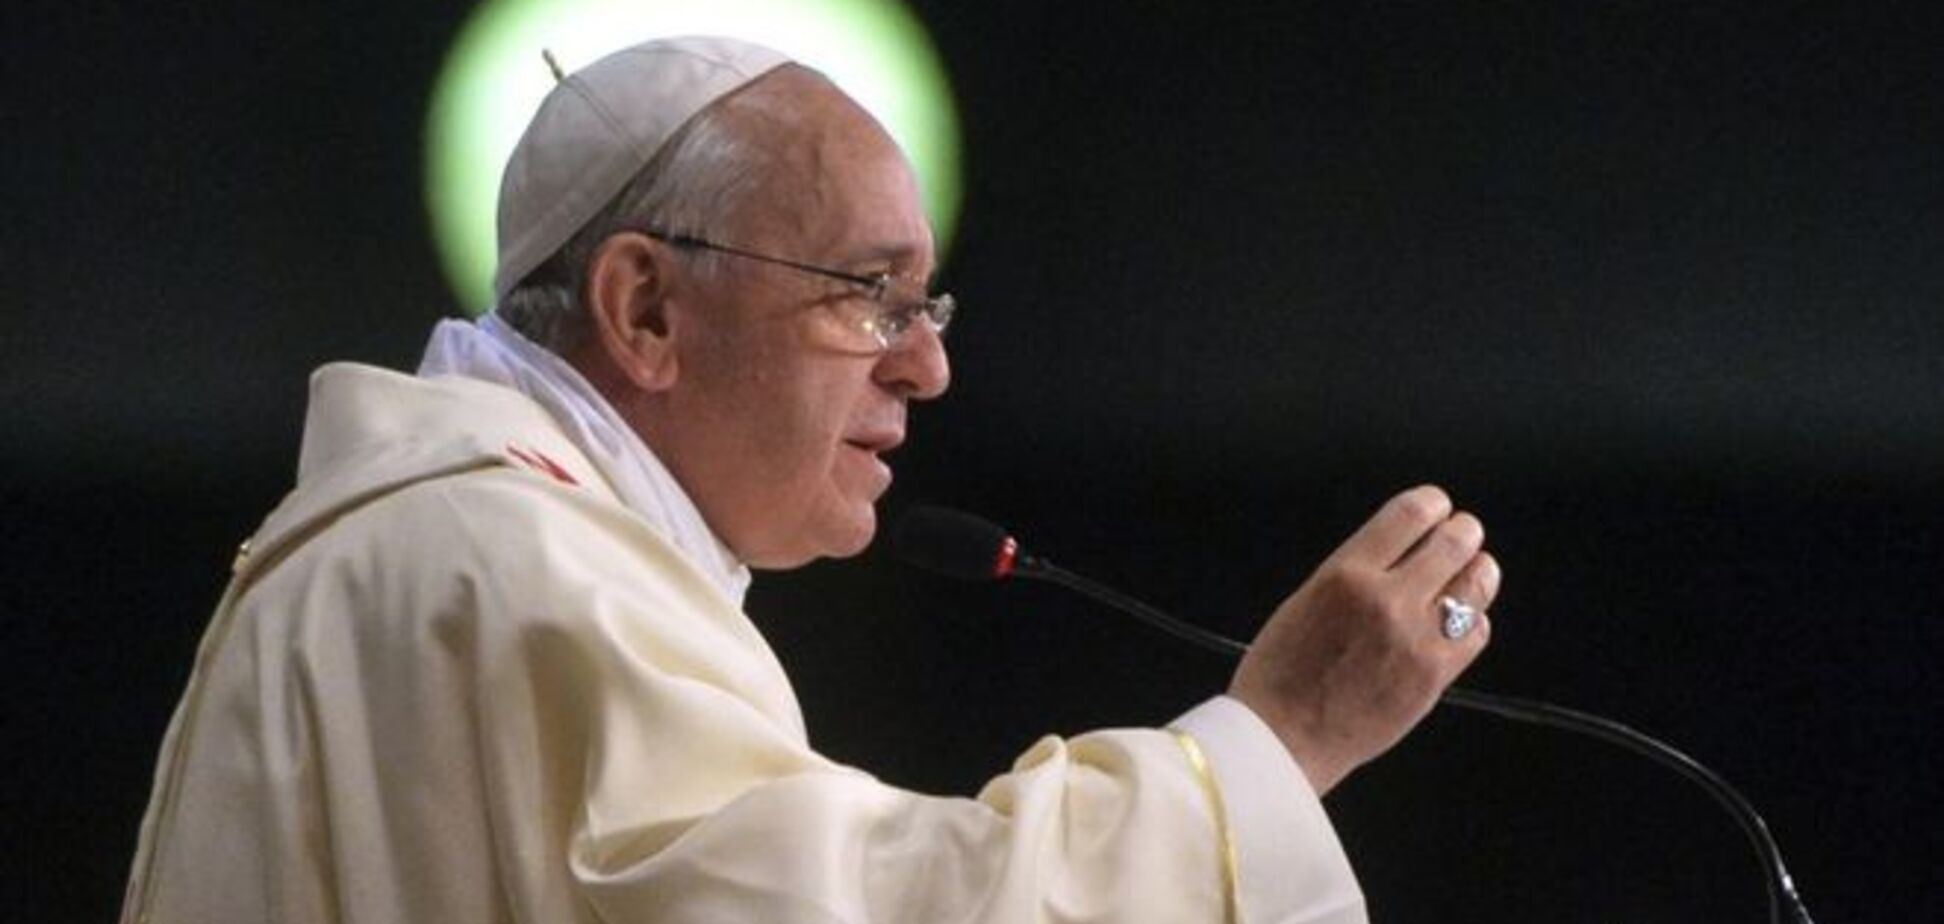 Перешагнув порог истории: Папа Римский попросил прощения у еретиков